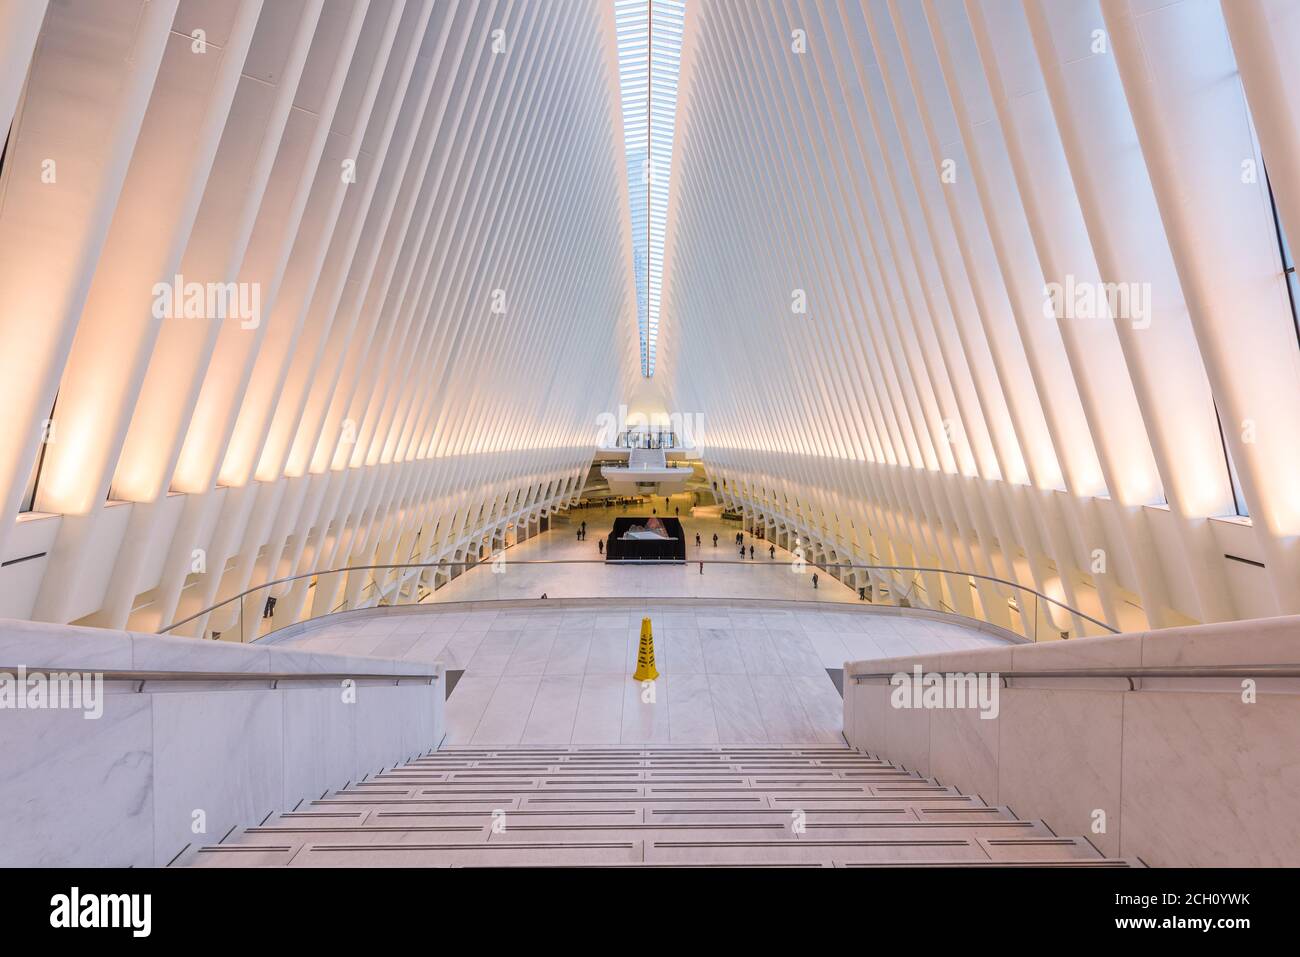 La città di NEW YORK, Stati Uniti d'America - 23 ottobre 2016: il Westfield World Trade Center Mall e il centro per il trasporto nella parte inferiore di Manhattan. Foto Stock